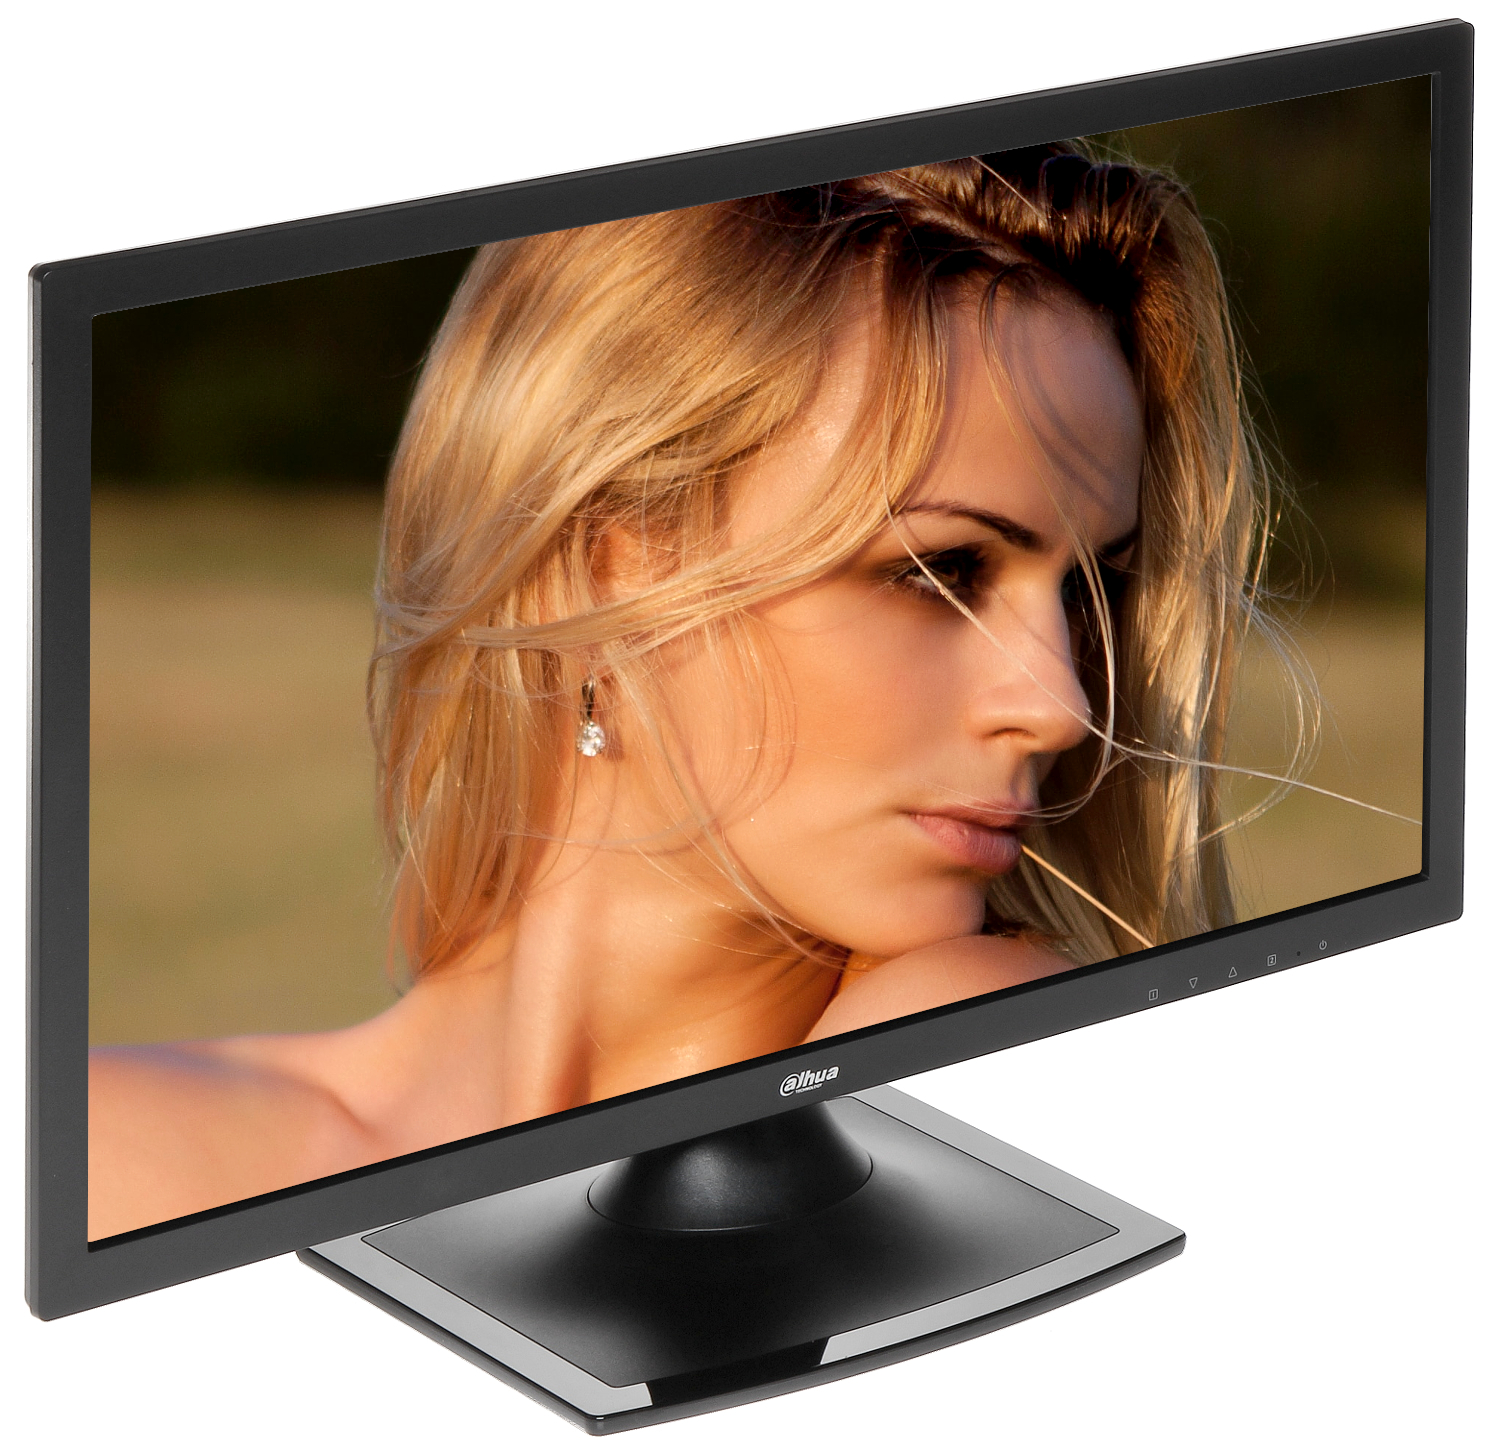 MONITOR VGA, HDMI, AUDIO DHL22-F600 20.7 " - 1080p LED... - LCD Monitors -  Delta